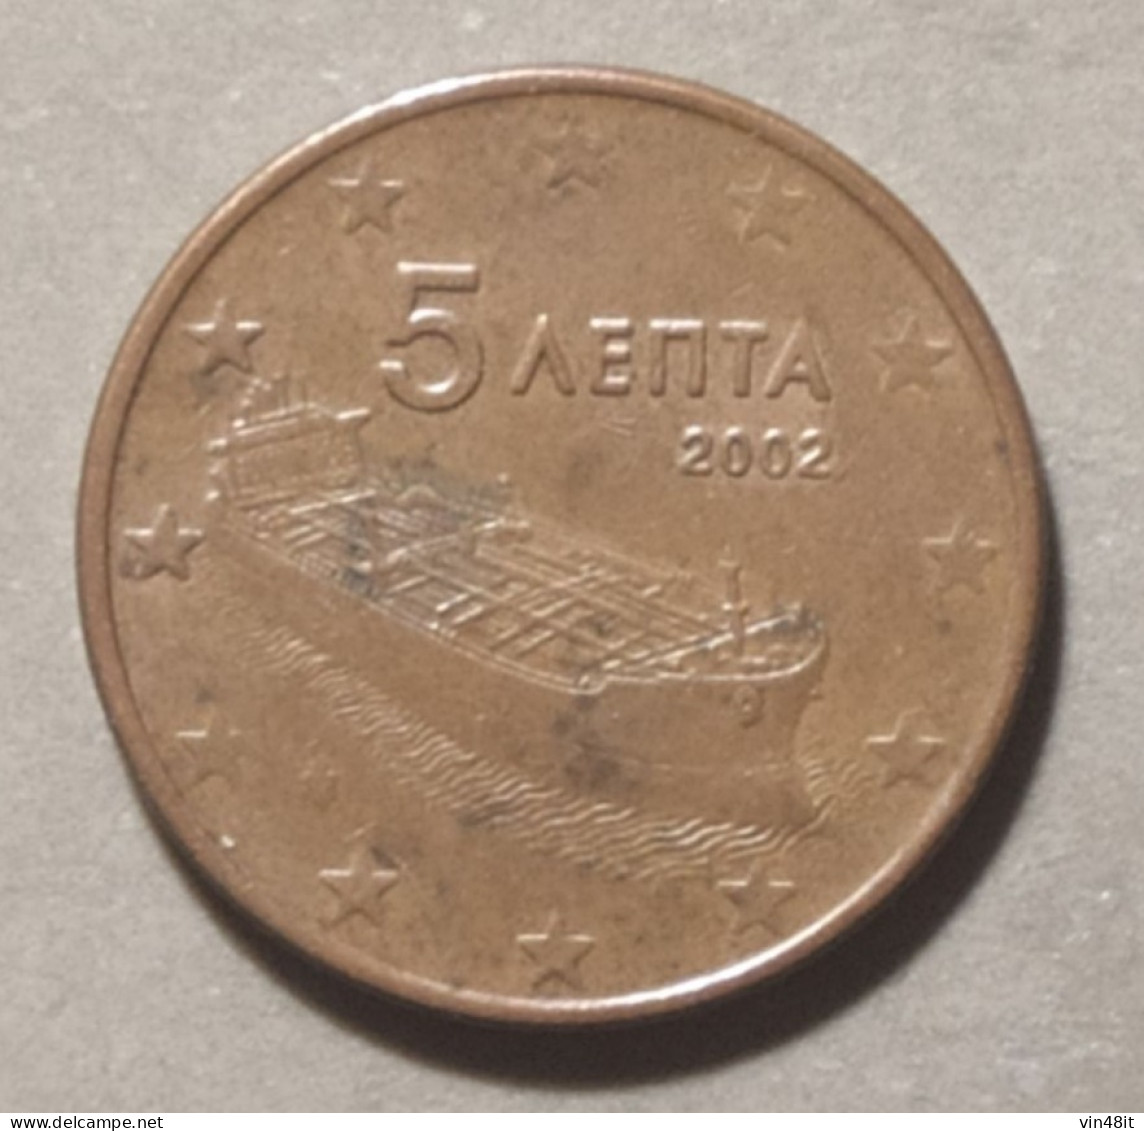 2002  -  GRECIA - MONETA IN EURO - DEL VALORE  DI  5  CENTESIMI - USATA - Griekenland